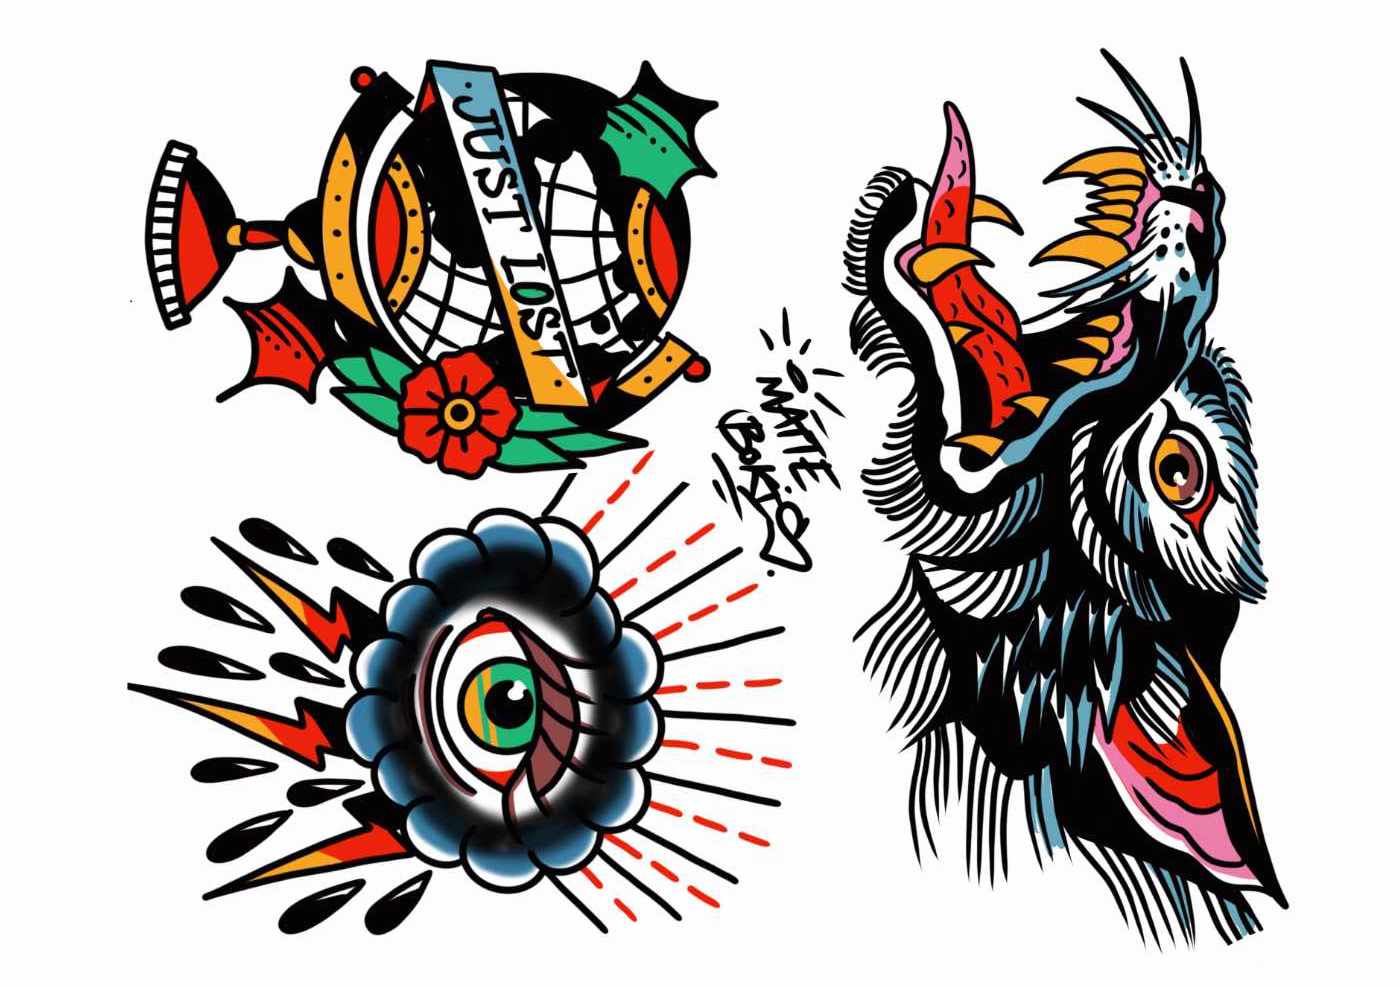 Kleurrijke nep-tatoeages in old school stijl met een wereldbol, de tekst "just lost", en een wolf.